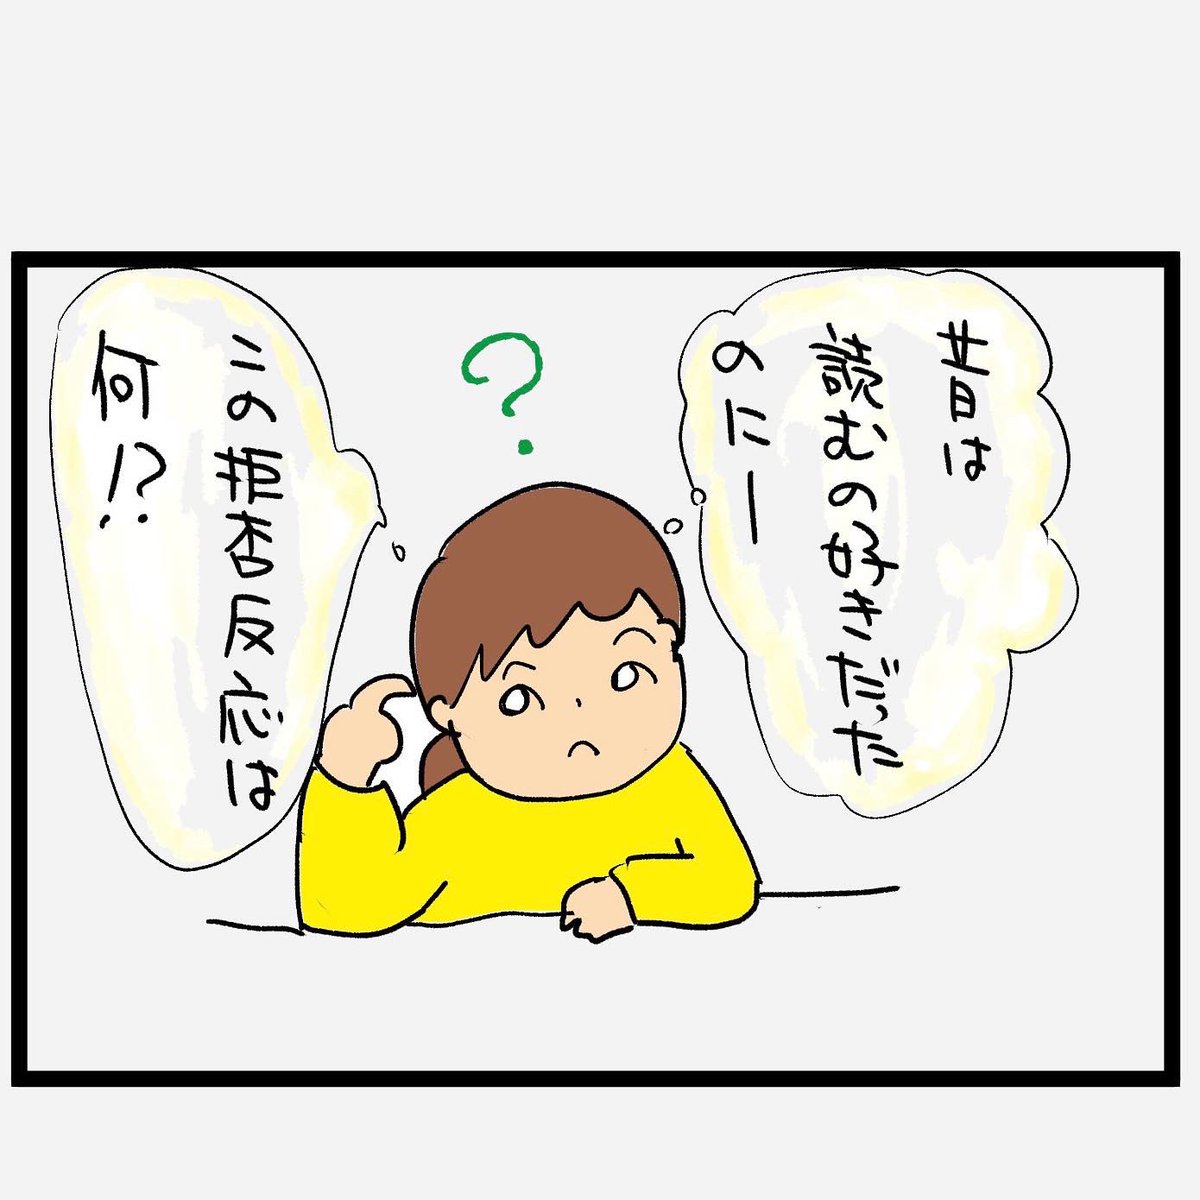 #四コマ漫画
#小説 